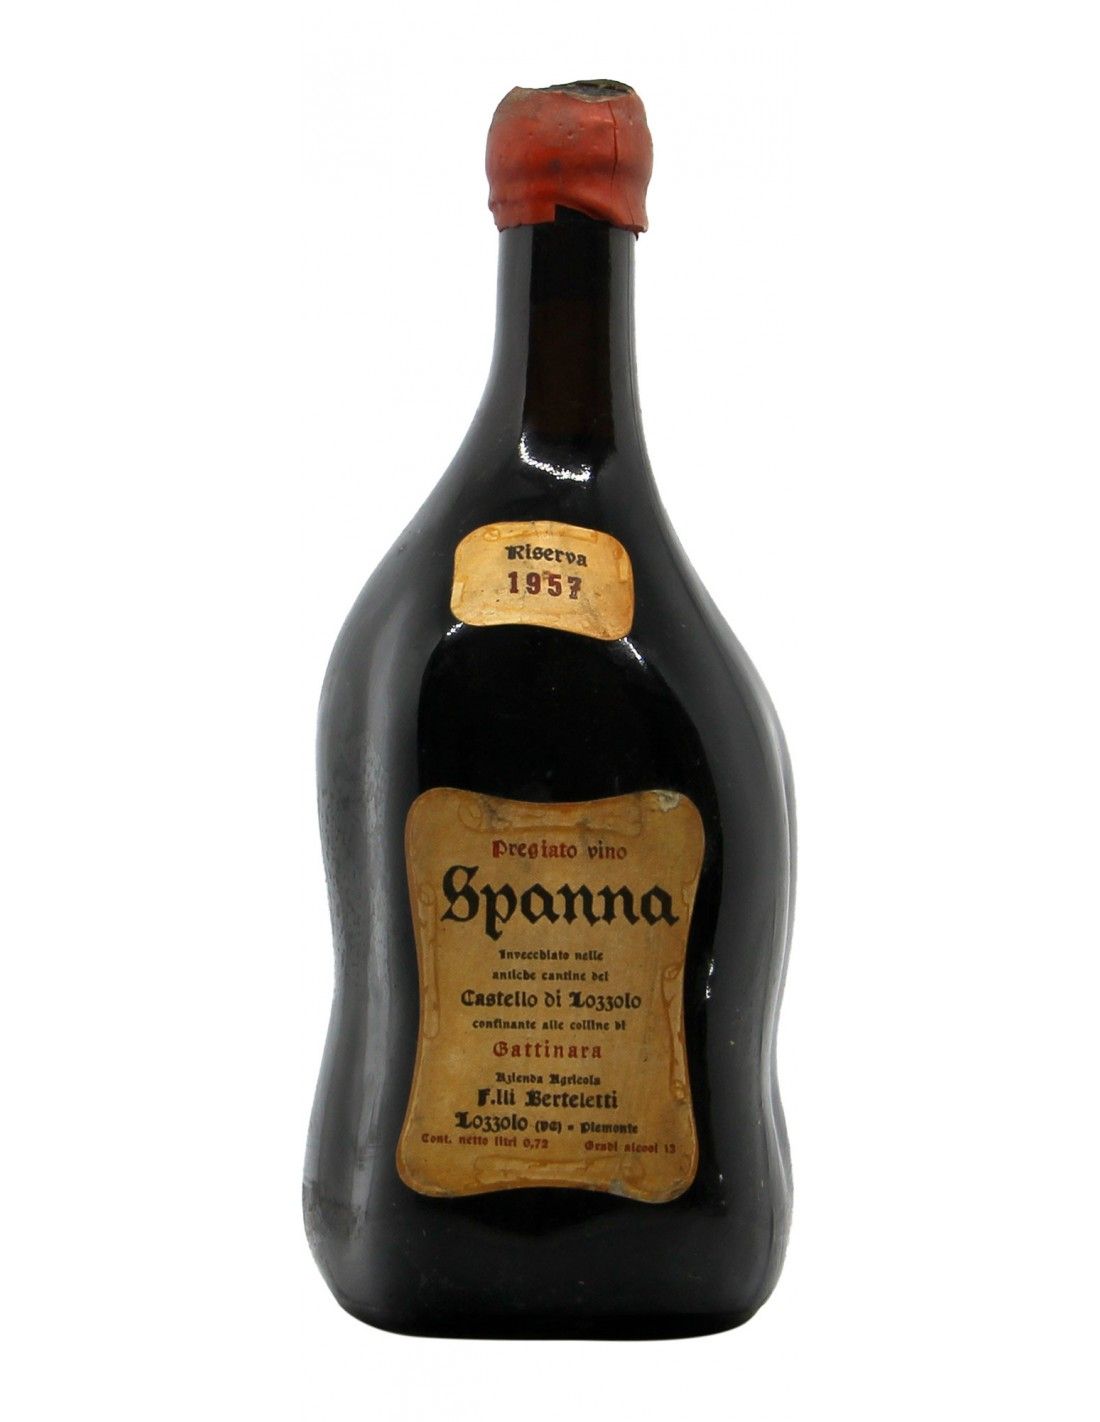 SPANNA RISERVA CASTELLO DI LOZZOLO 1957 FRATELLI BERTELETTI Grandi Bottiglie